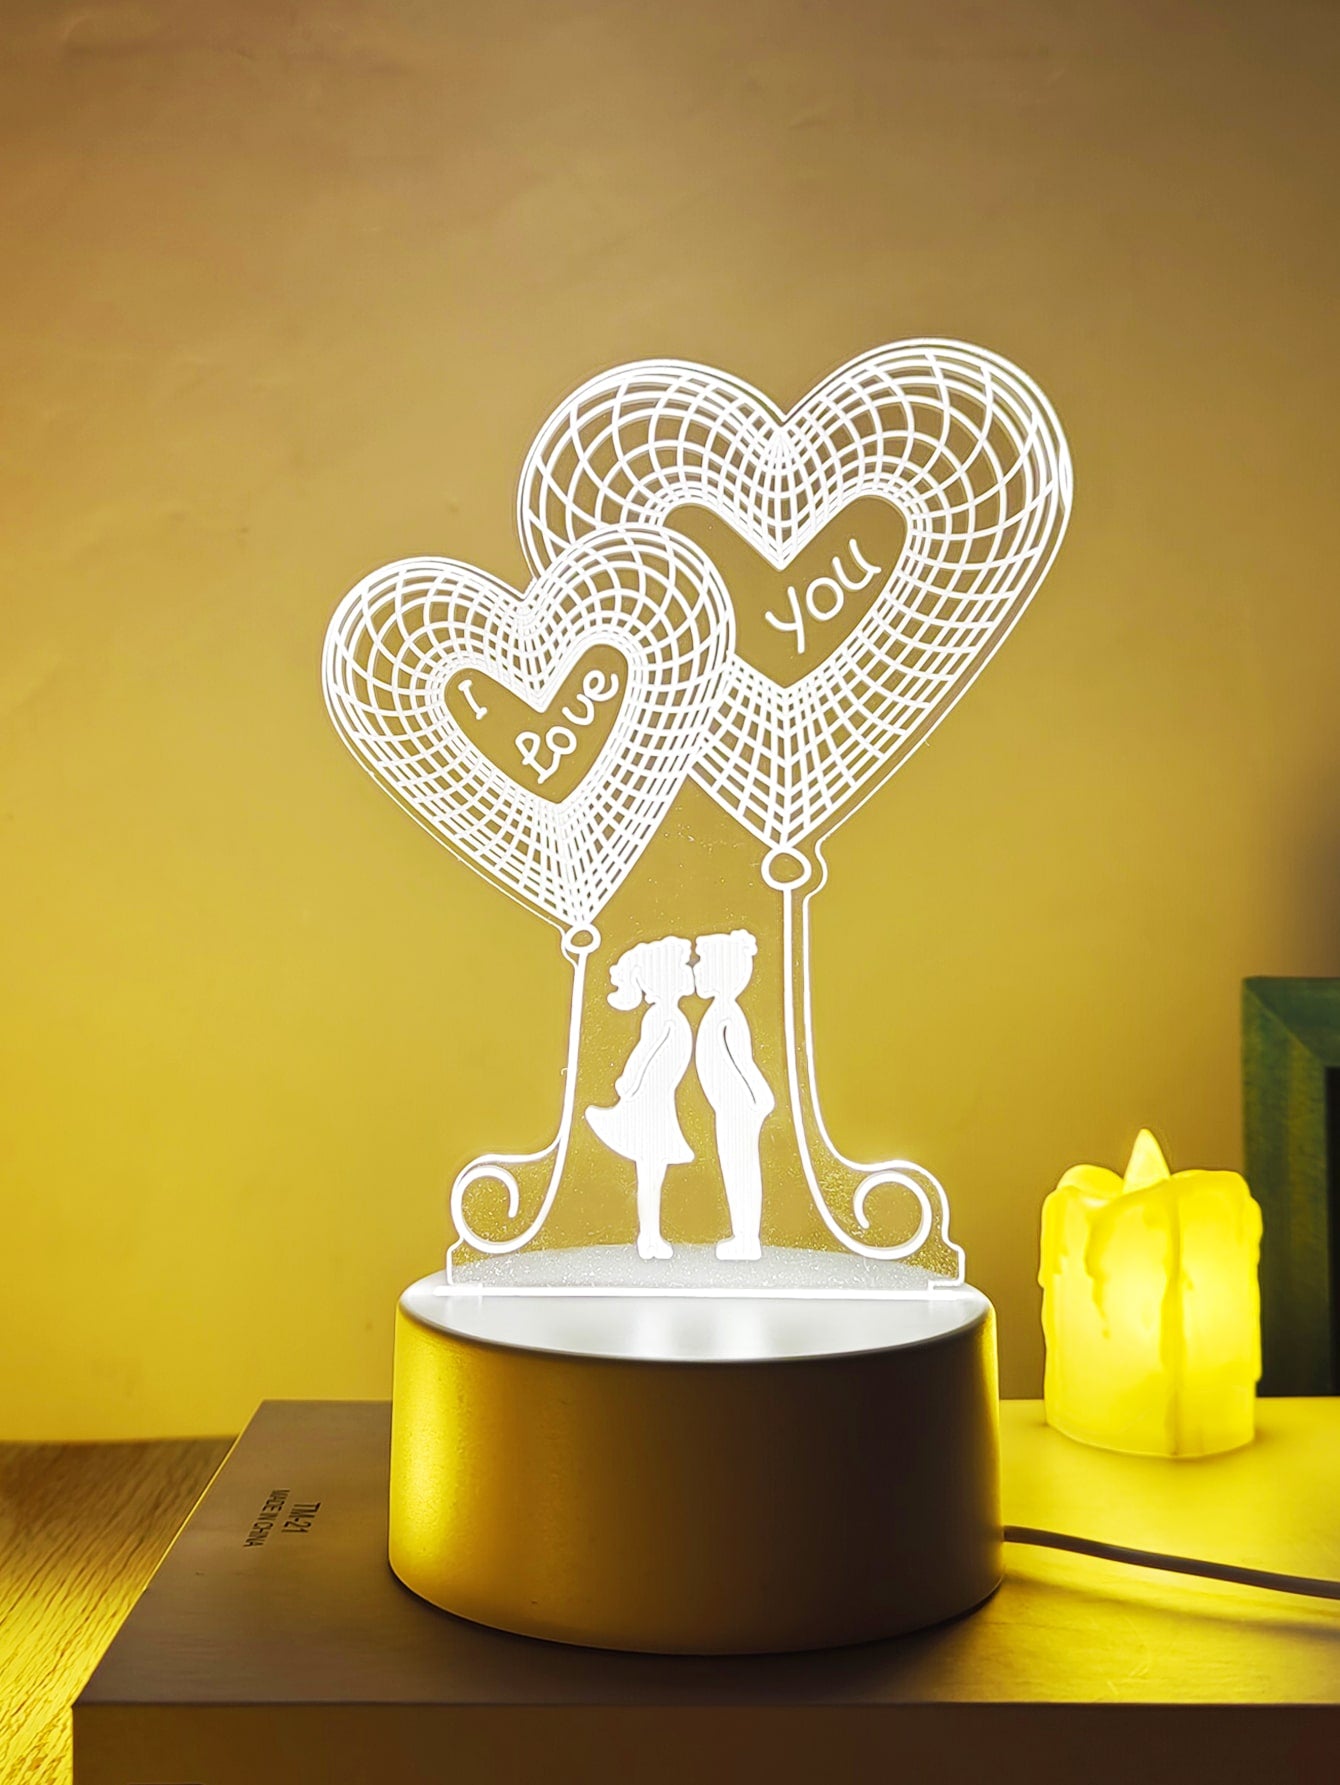 Heart Design Decorative Light